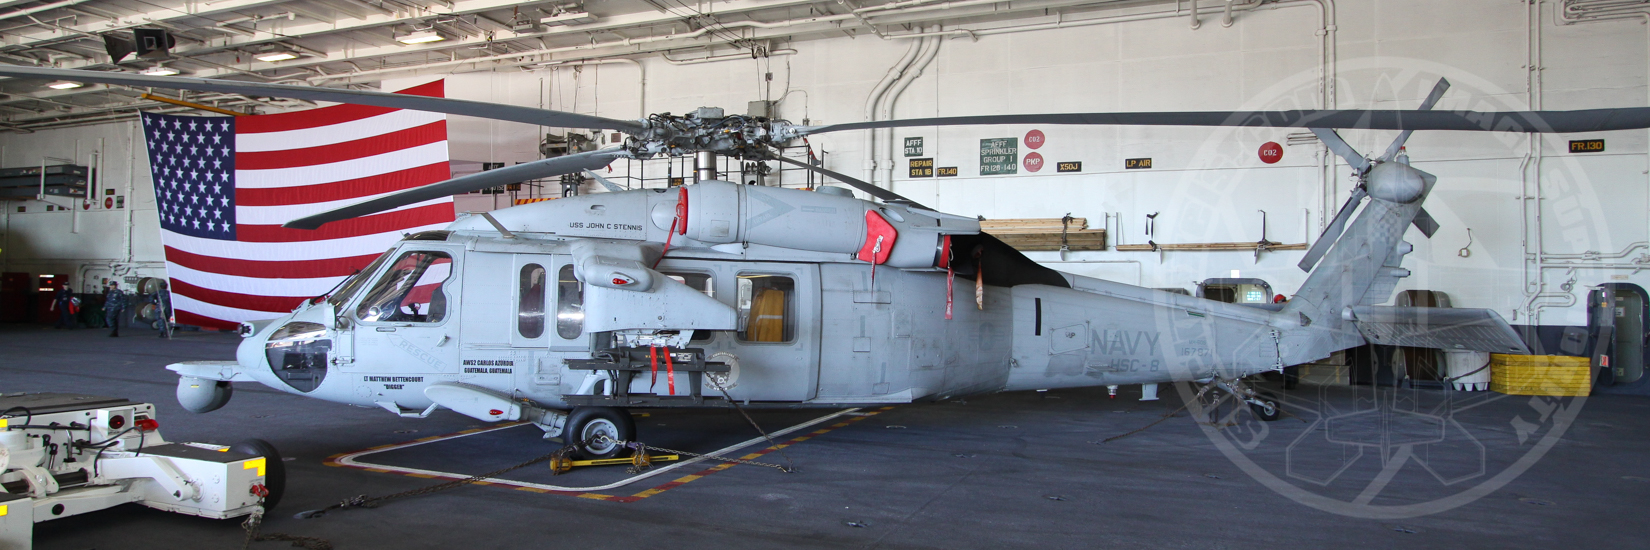 MH-60 aboard USS John C. Stennis